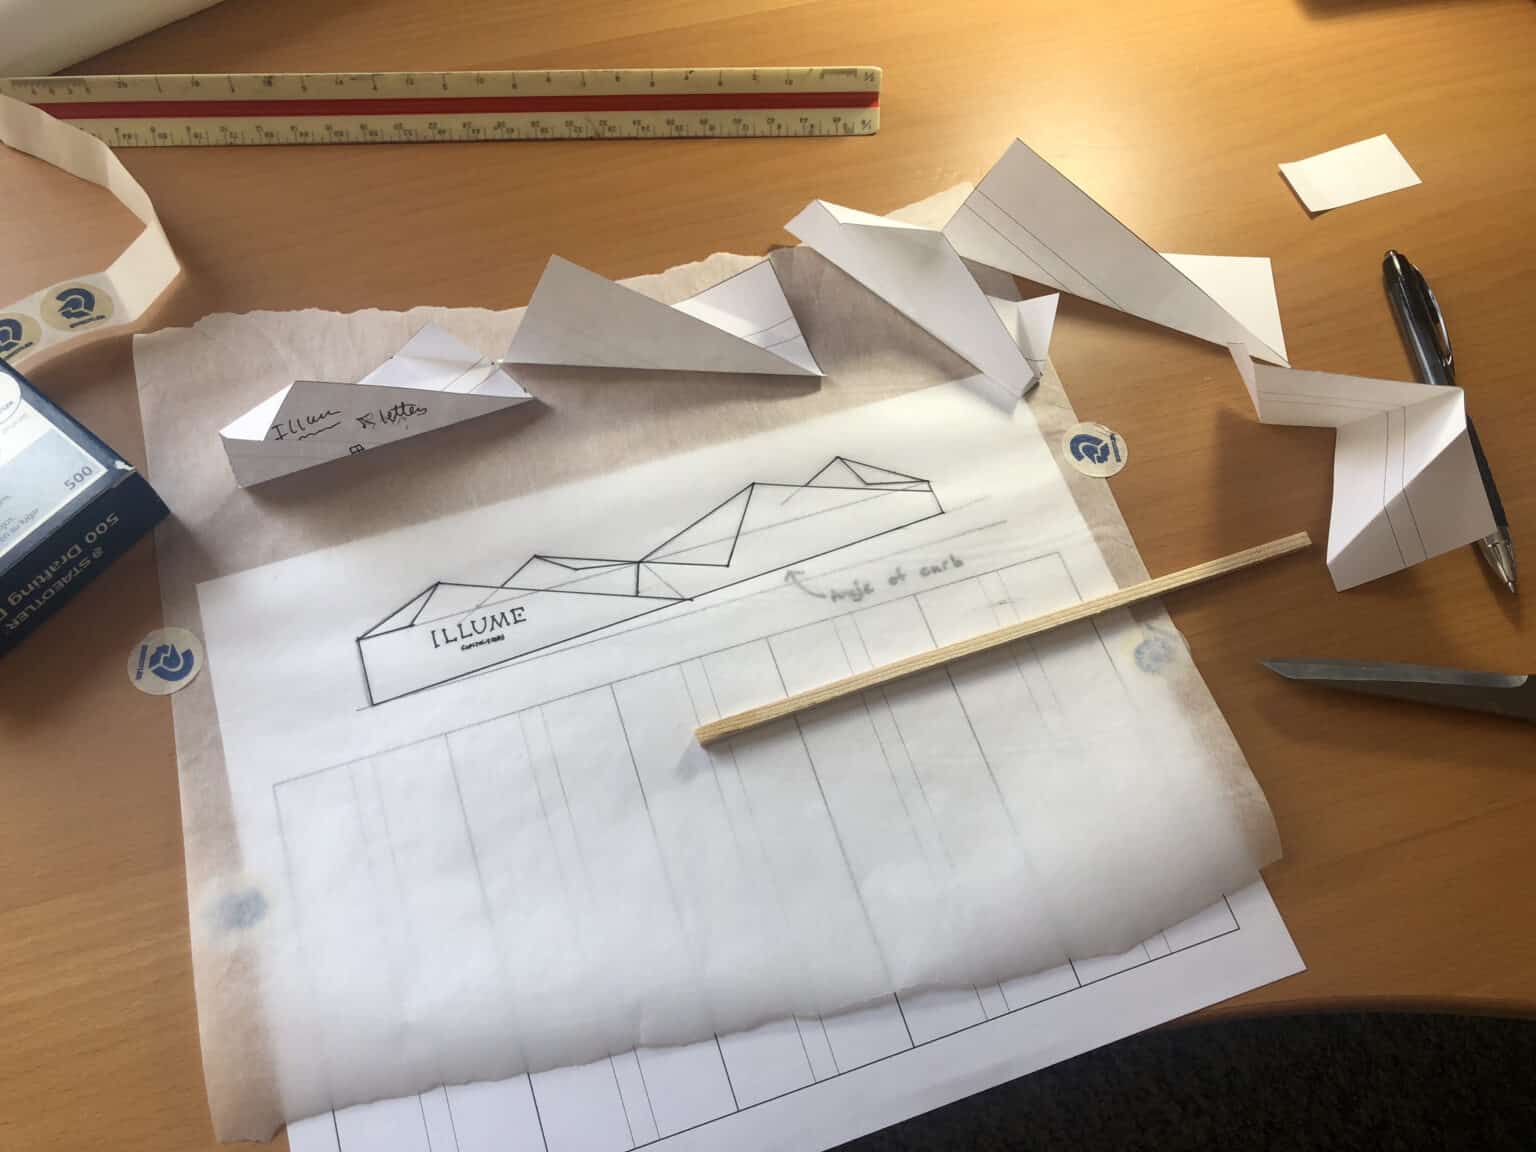 Planning Design of Illume Origami Structure